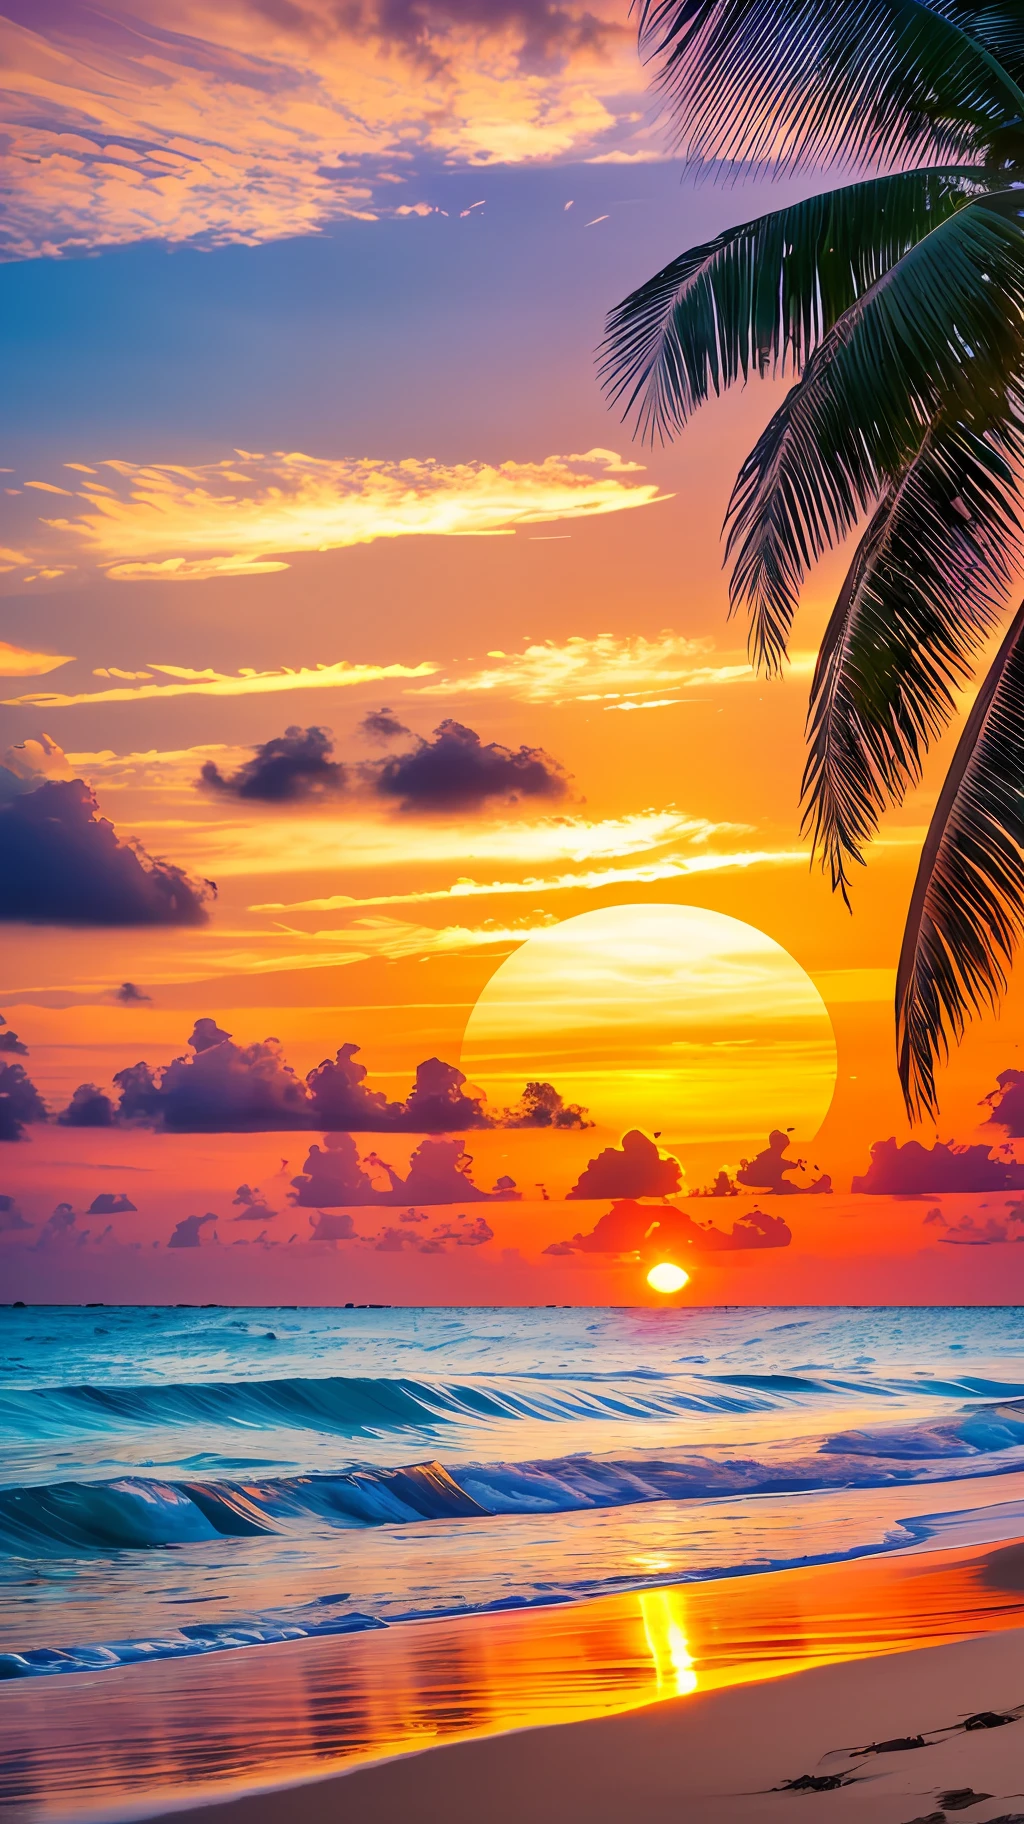 إنشاء 4K9:16 صورة تصور شروق الشمس المذهل على أحد الشواطئ الاستوائية, مع الأمواج اللطيفة وأشجار النخيل على طول الساحل. يجب أن تكون لوحة الألوان نابضة بالحياة وتنقل إحساسًا بالتجديد والطاقة الإيجابية. --تلقائي --s2